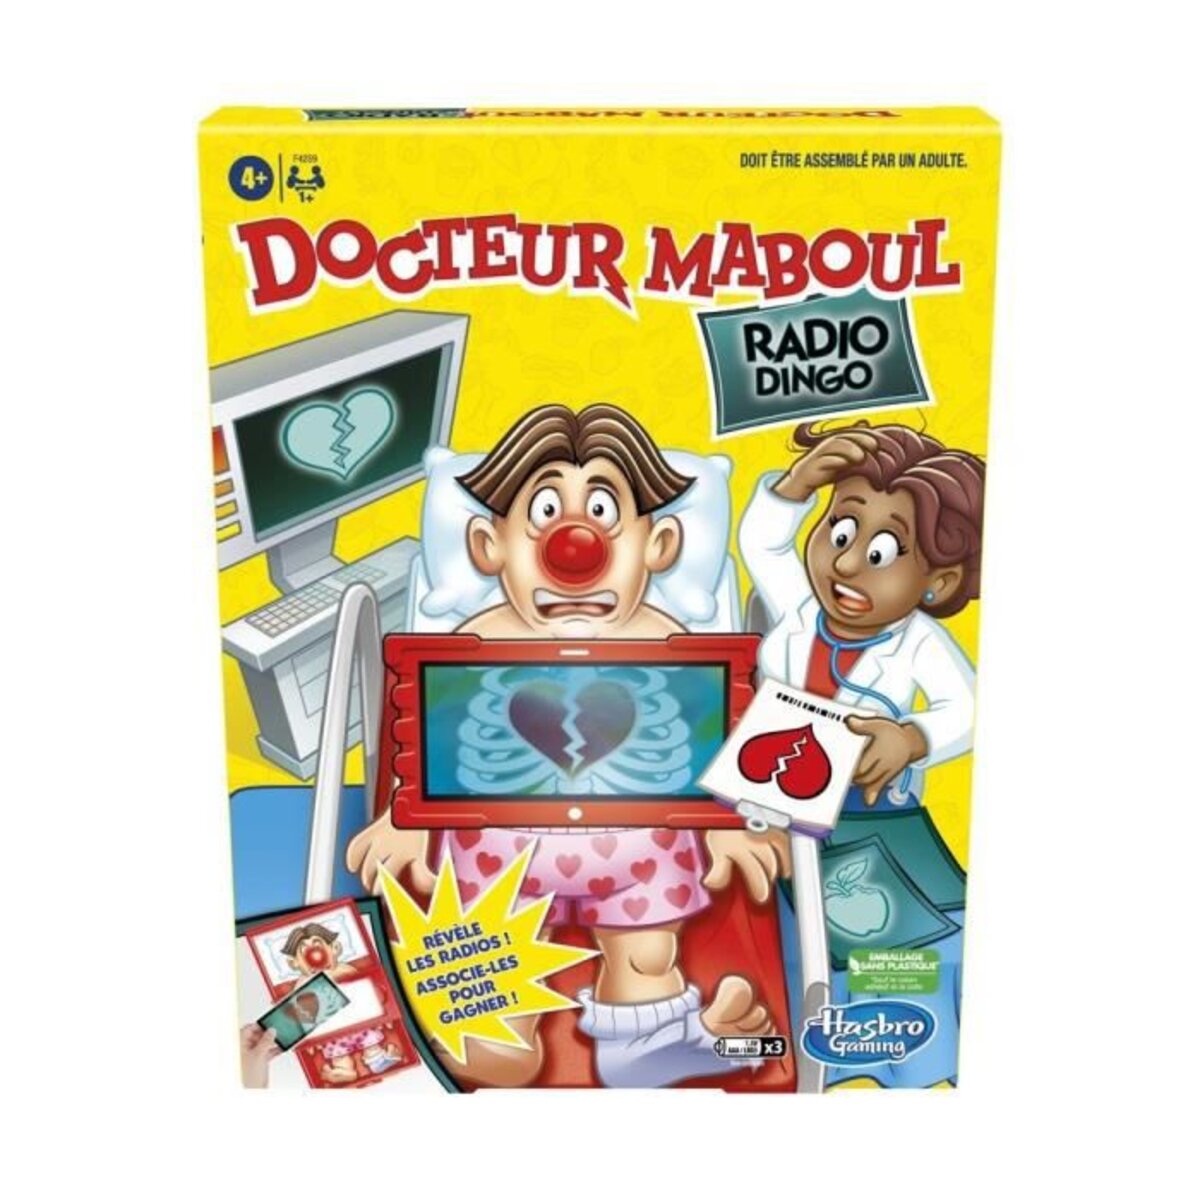 Docteur maboul, un jeu de société à partir de 6 ans